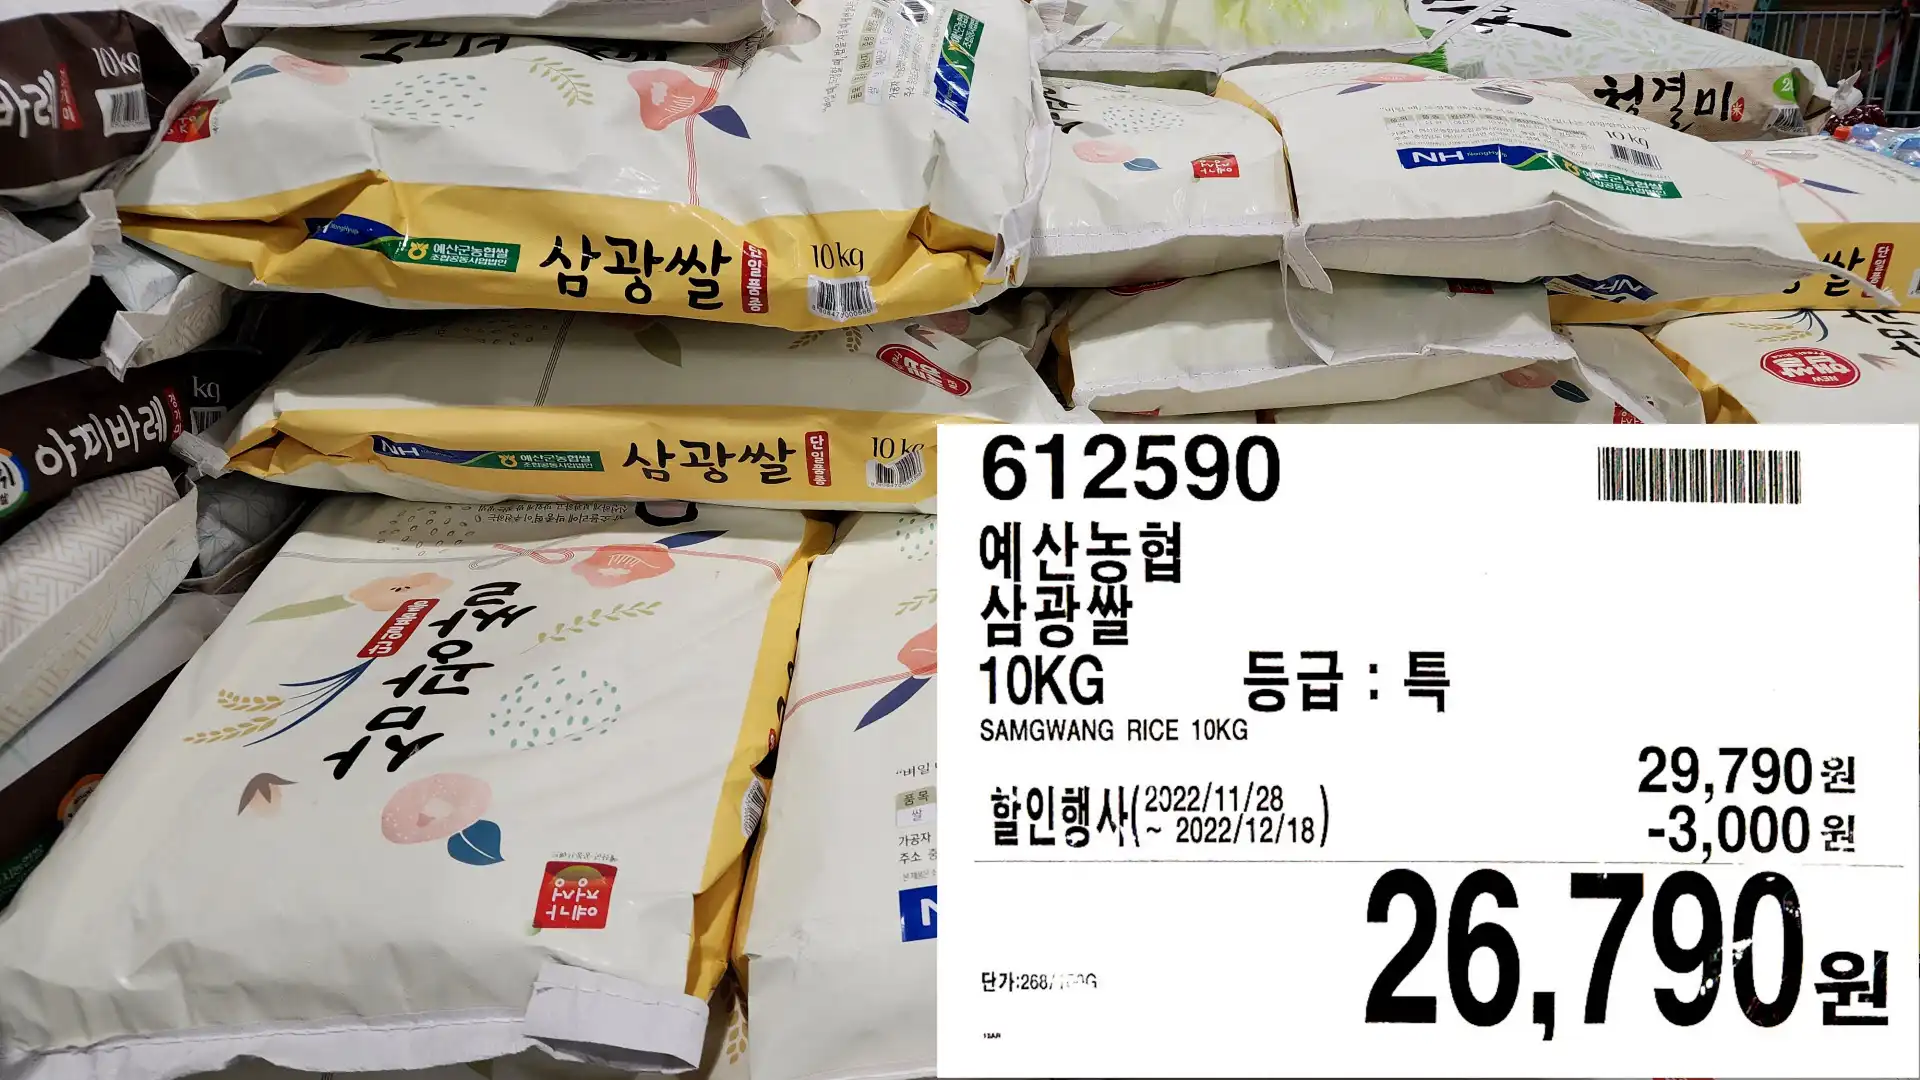 예산농협
삼광쌀
10KG
SAMGWANG RICE 10KG
등급 : 특
26&#44;790원